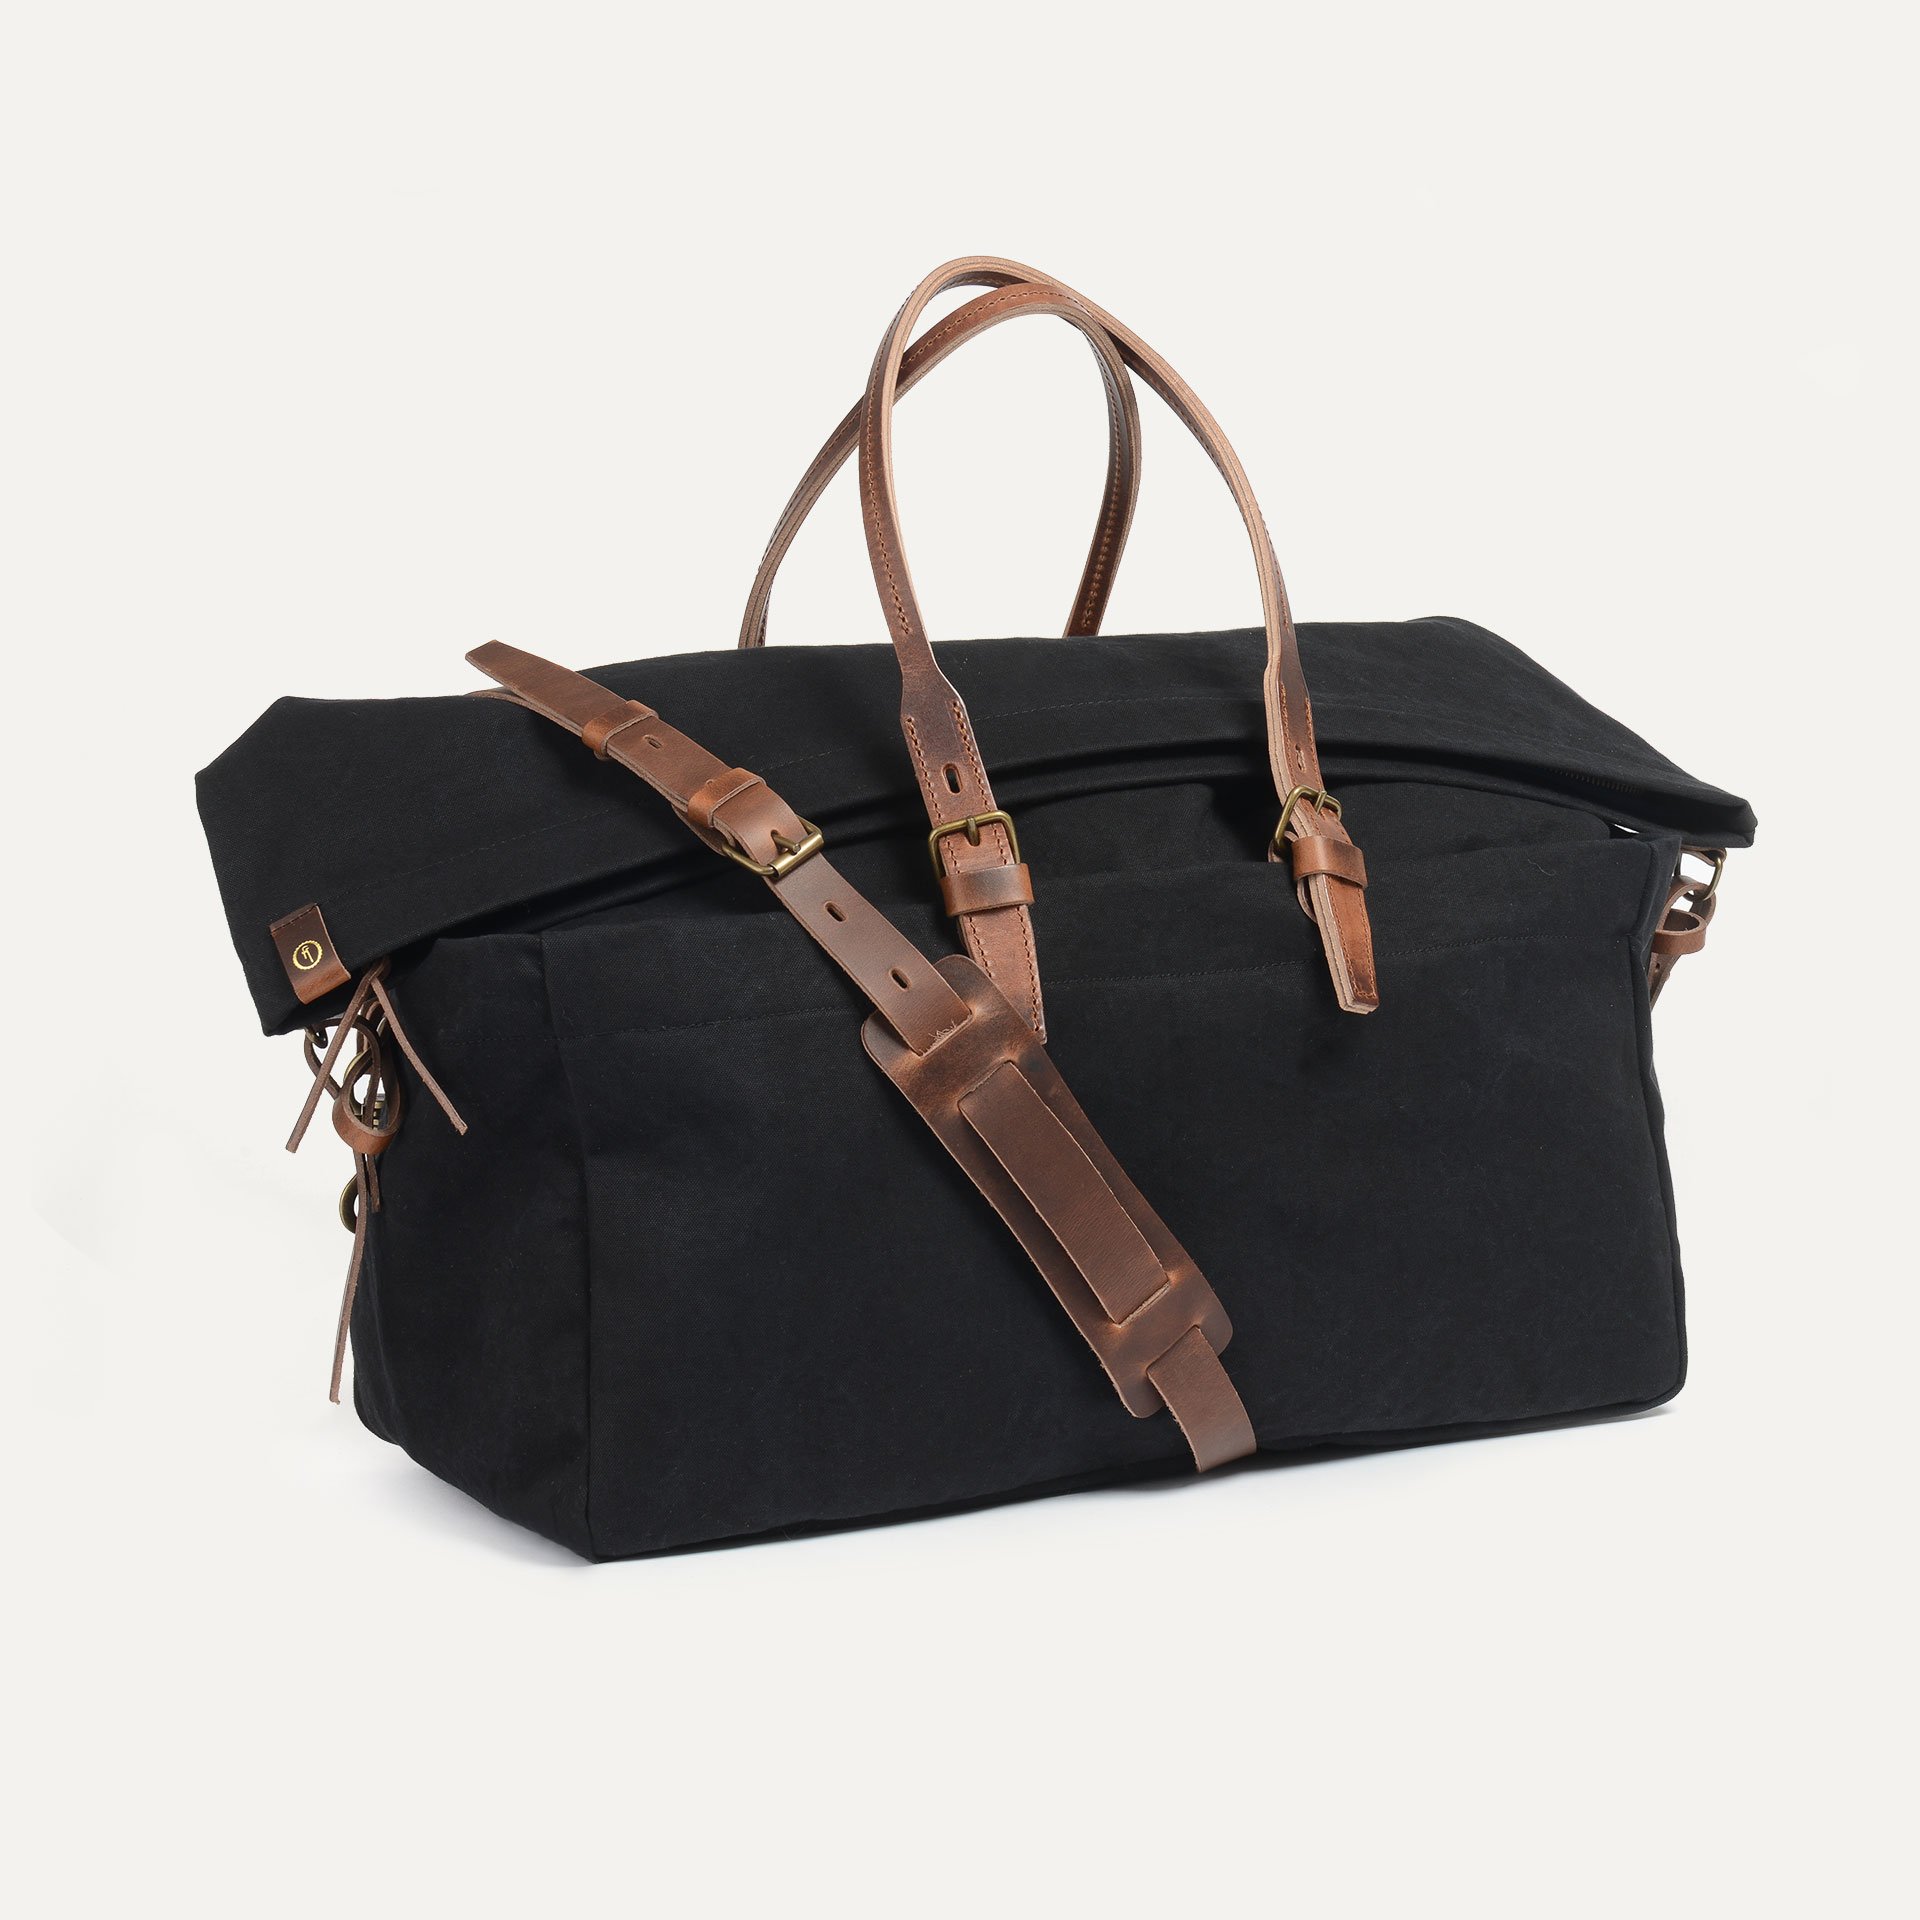 Lightweight travel bag